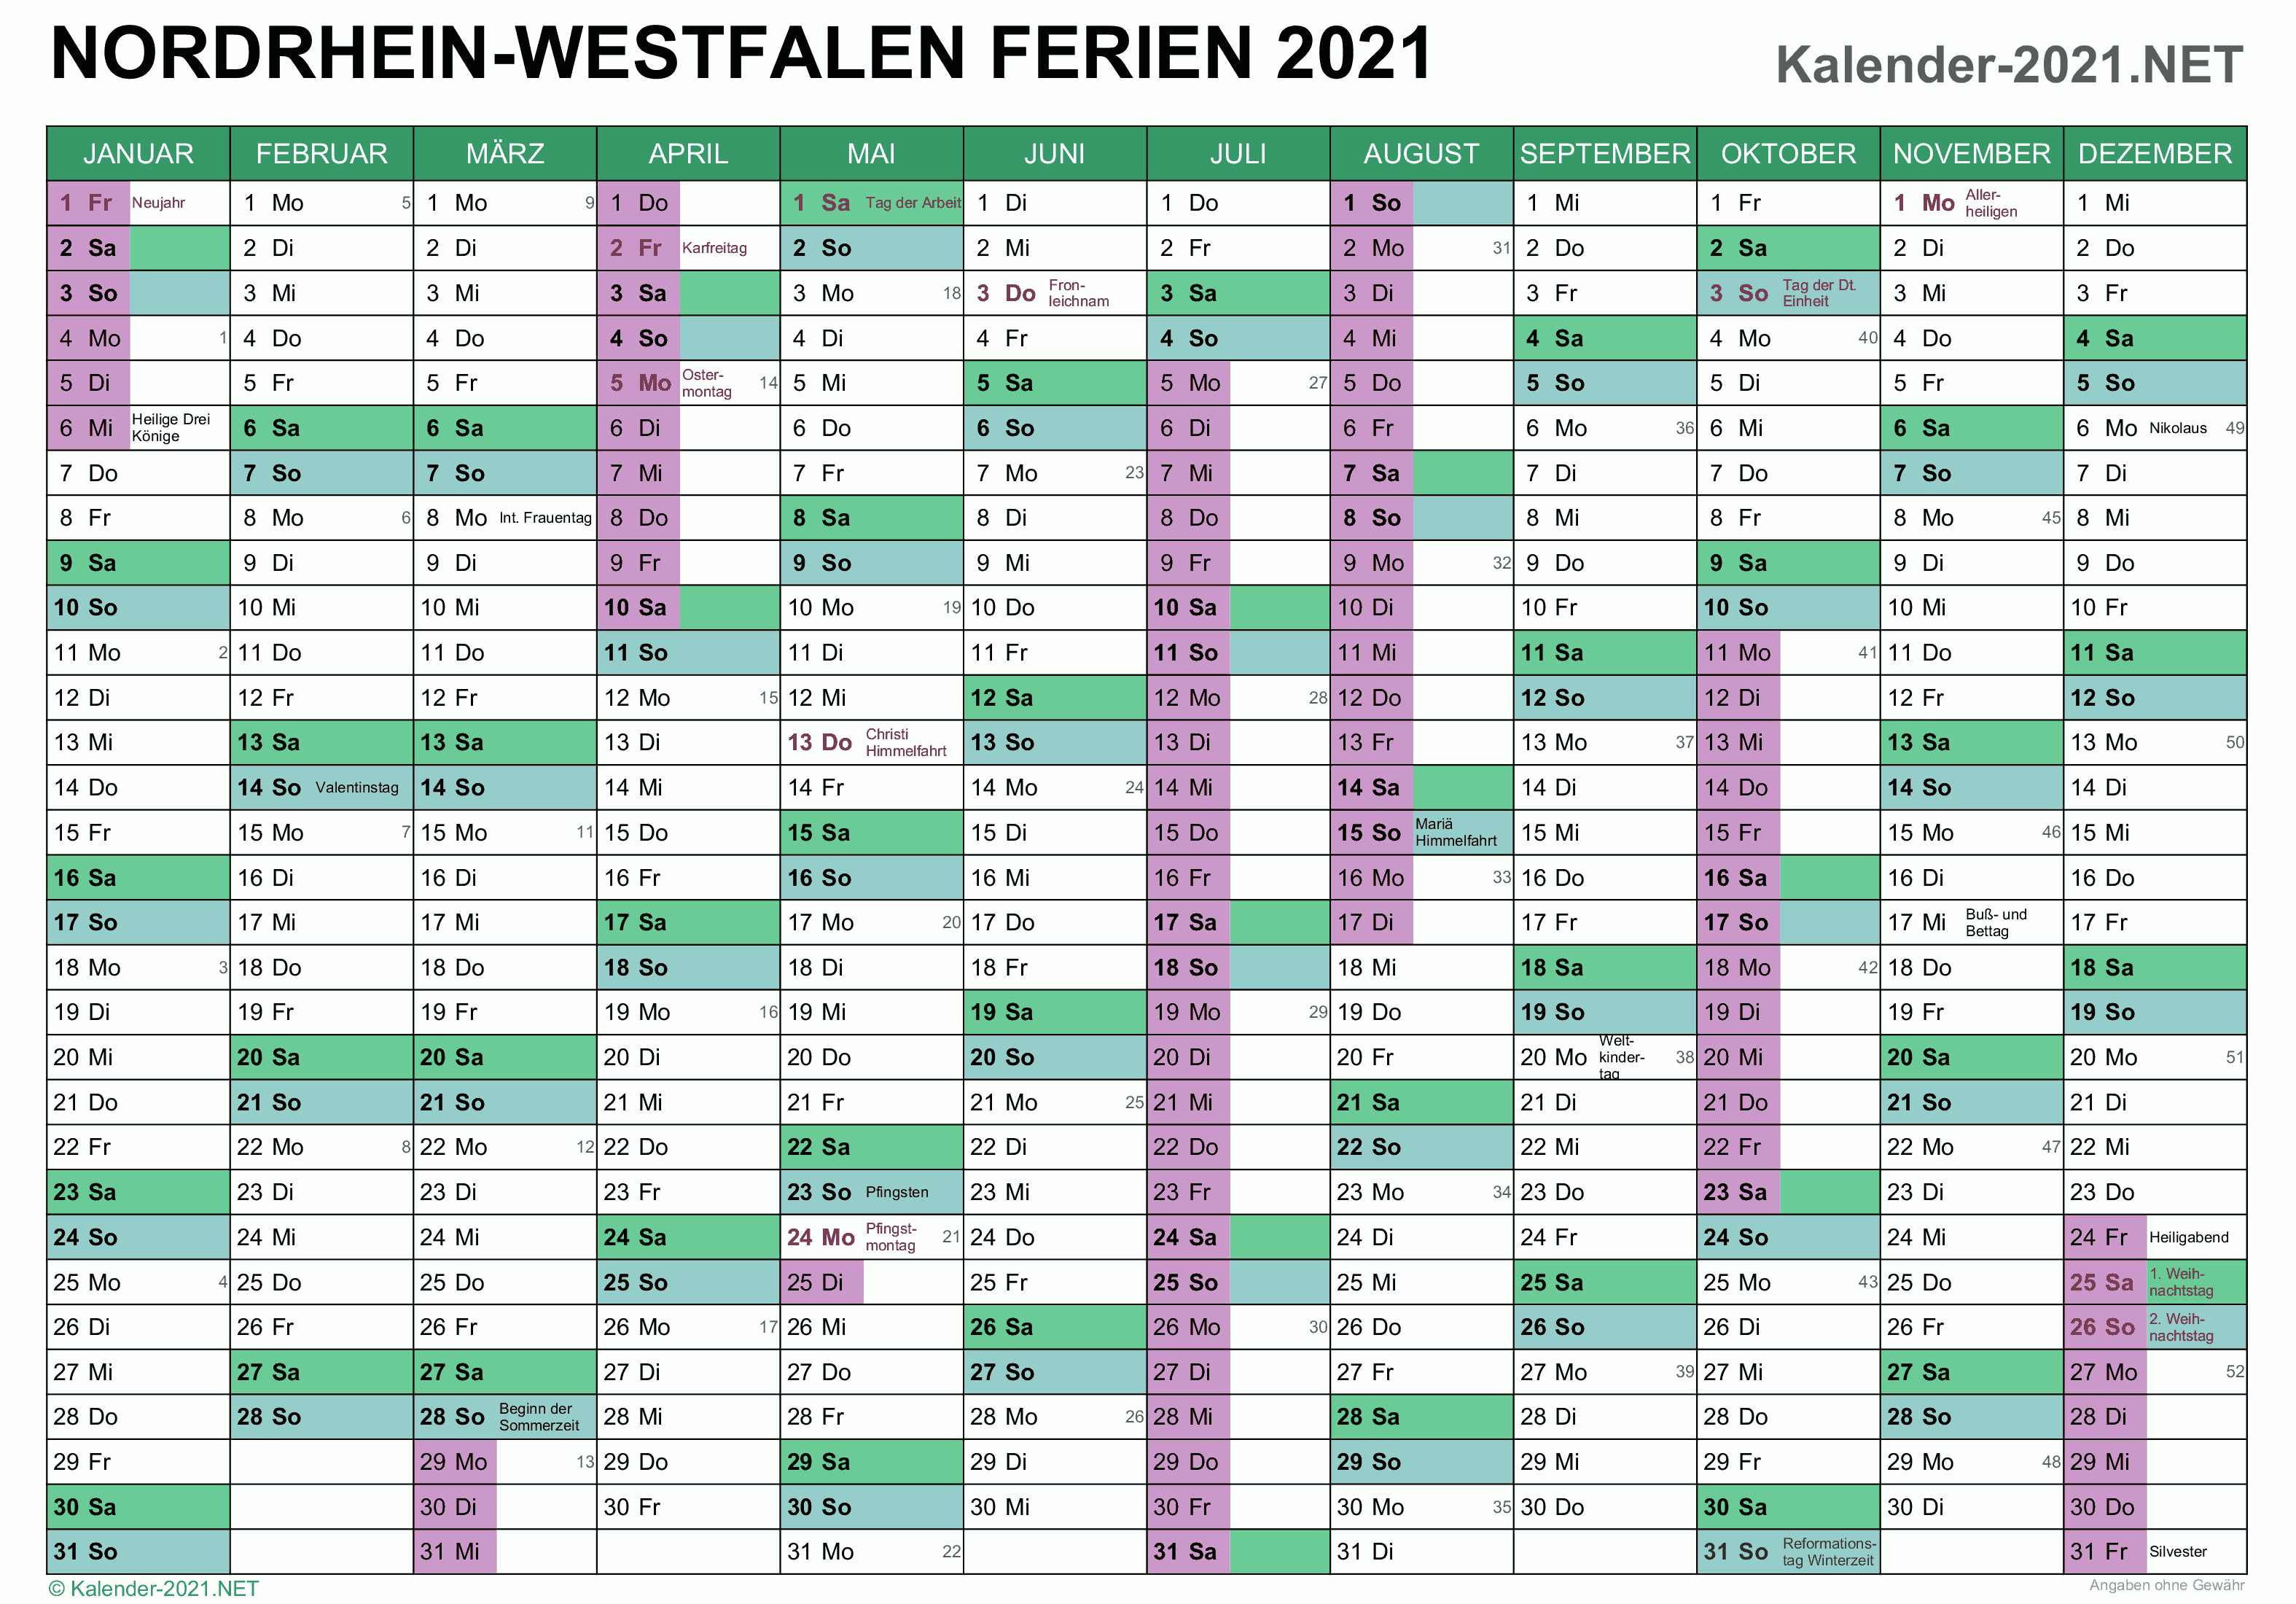 In deutschland hat die erste woche im kalender 2021 die kalenderwoche 53